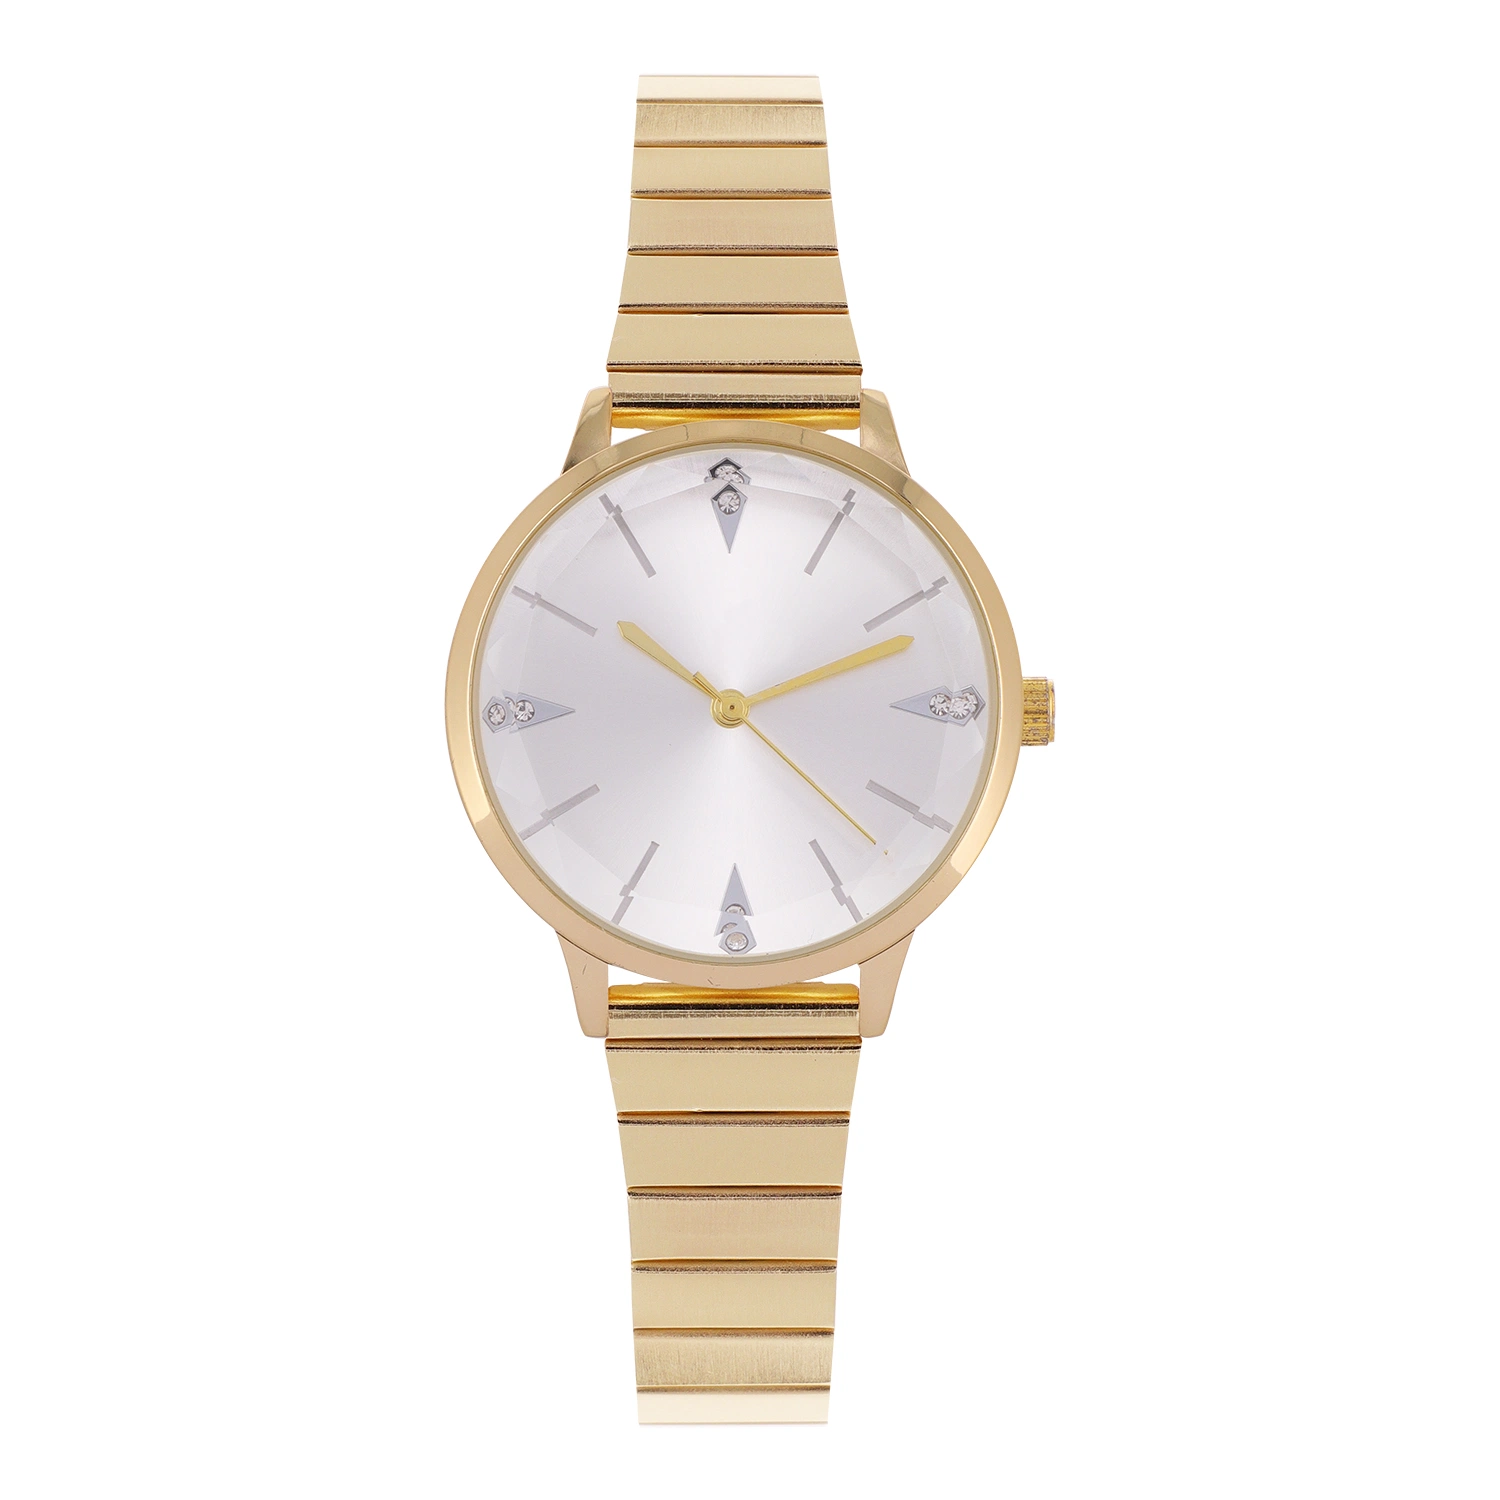 Diseño personalizado de buena calidad de acero inoxidable resistente al agua Women Watch Relojes de Pulsera de moda dama